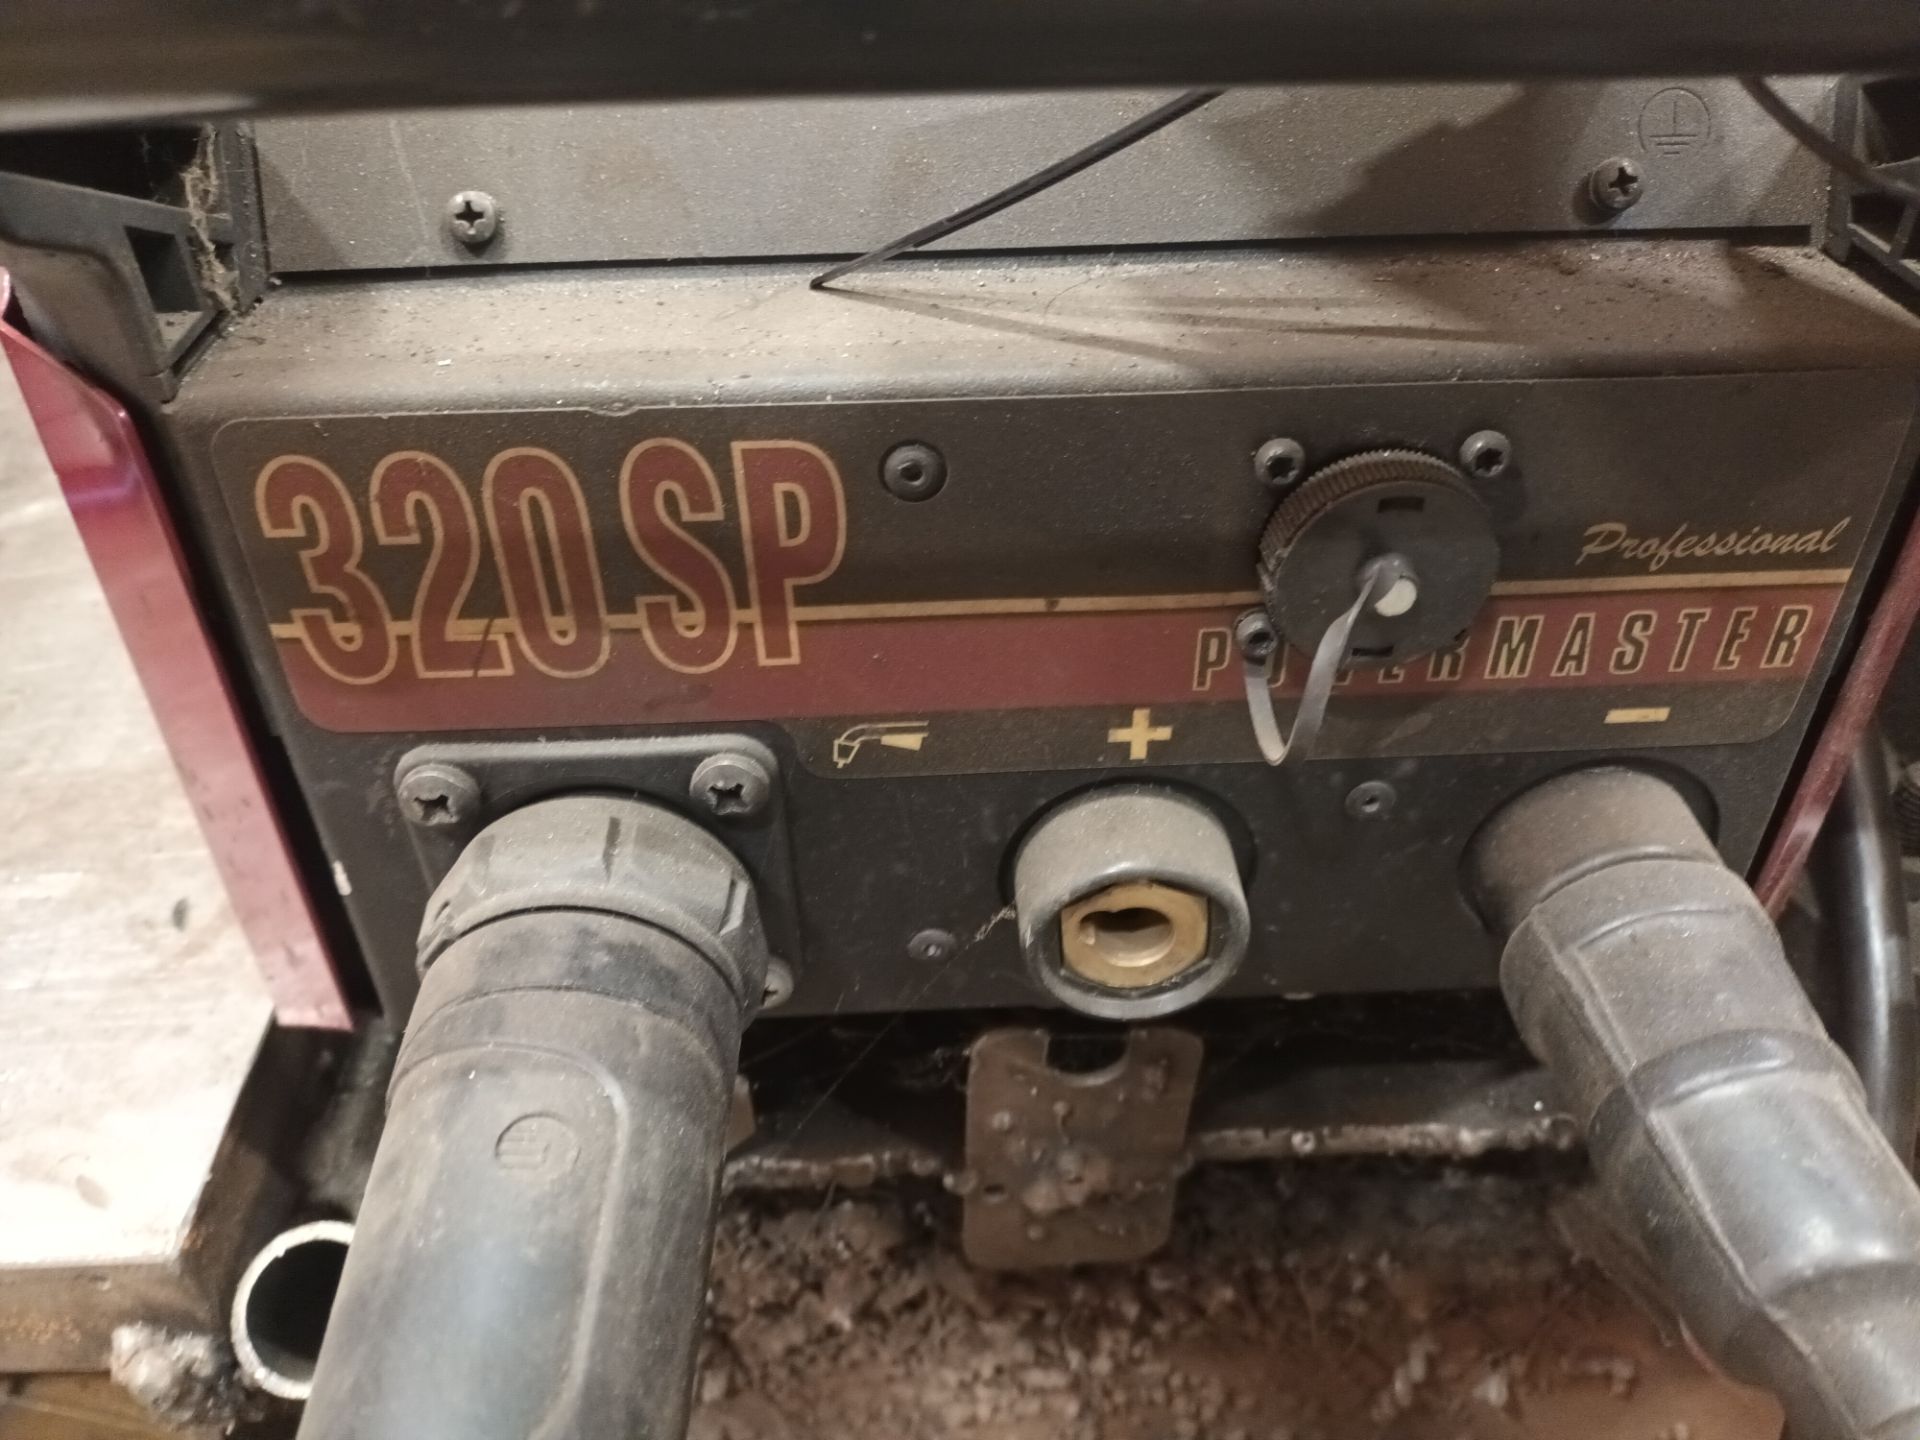 Thermal Arc Powermaster 320SP welder, Serial no. R210002AW1000101 - Image 3 of 4